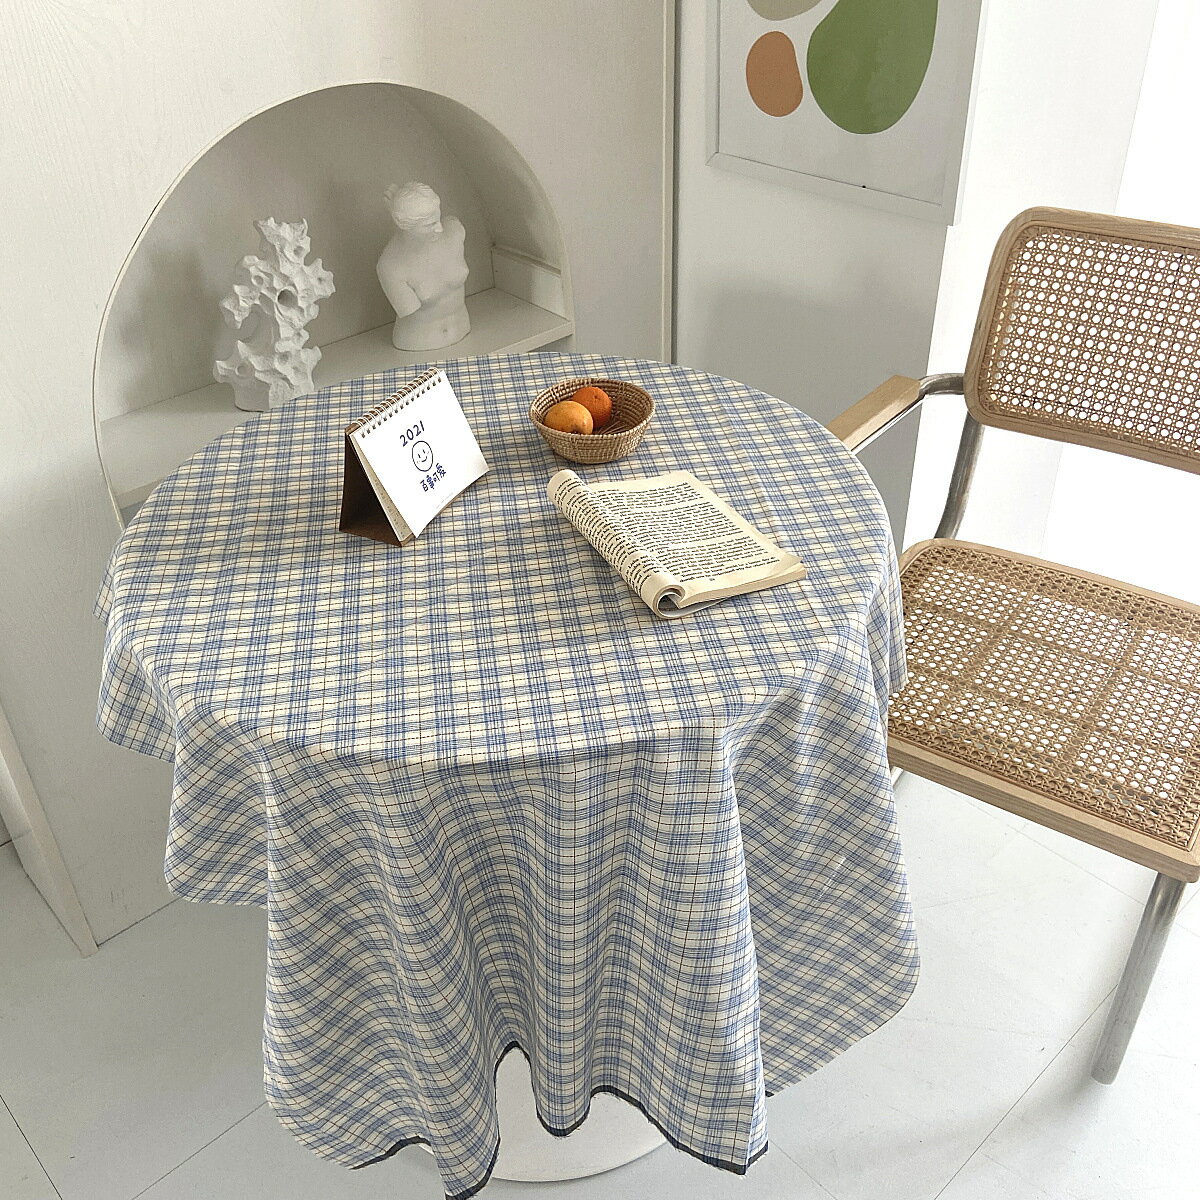 新款韓風桌布格子小清新棉麻背景布森系麻布家居裝飾書桌野餐布墊